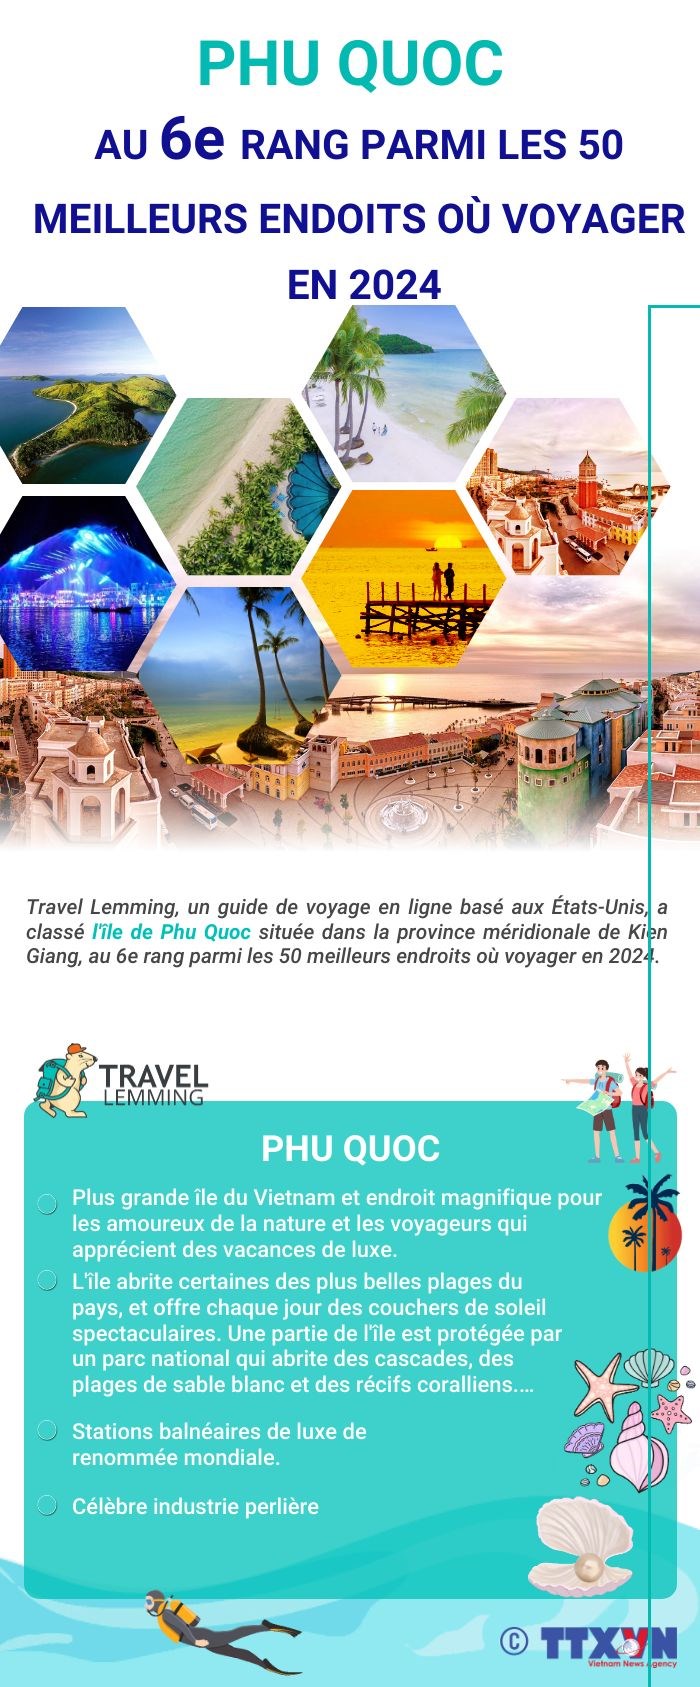 Phu Quoc au 6e rang parmi les 50 meilleurs endroits ou voyager en 2024 hinh anh 1